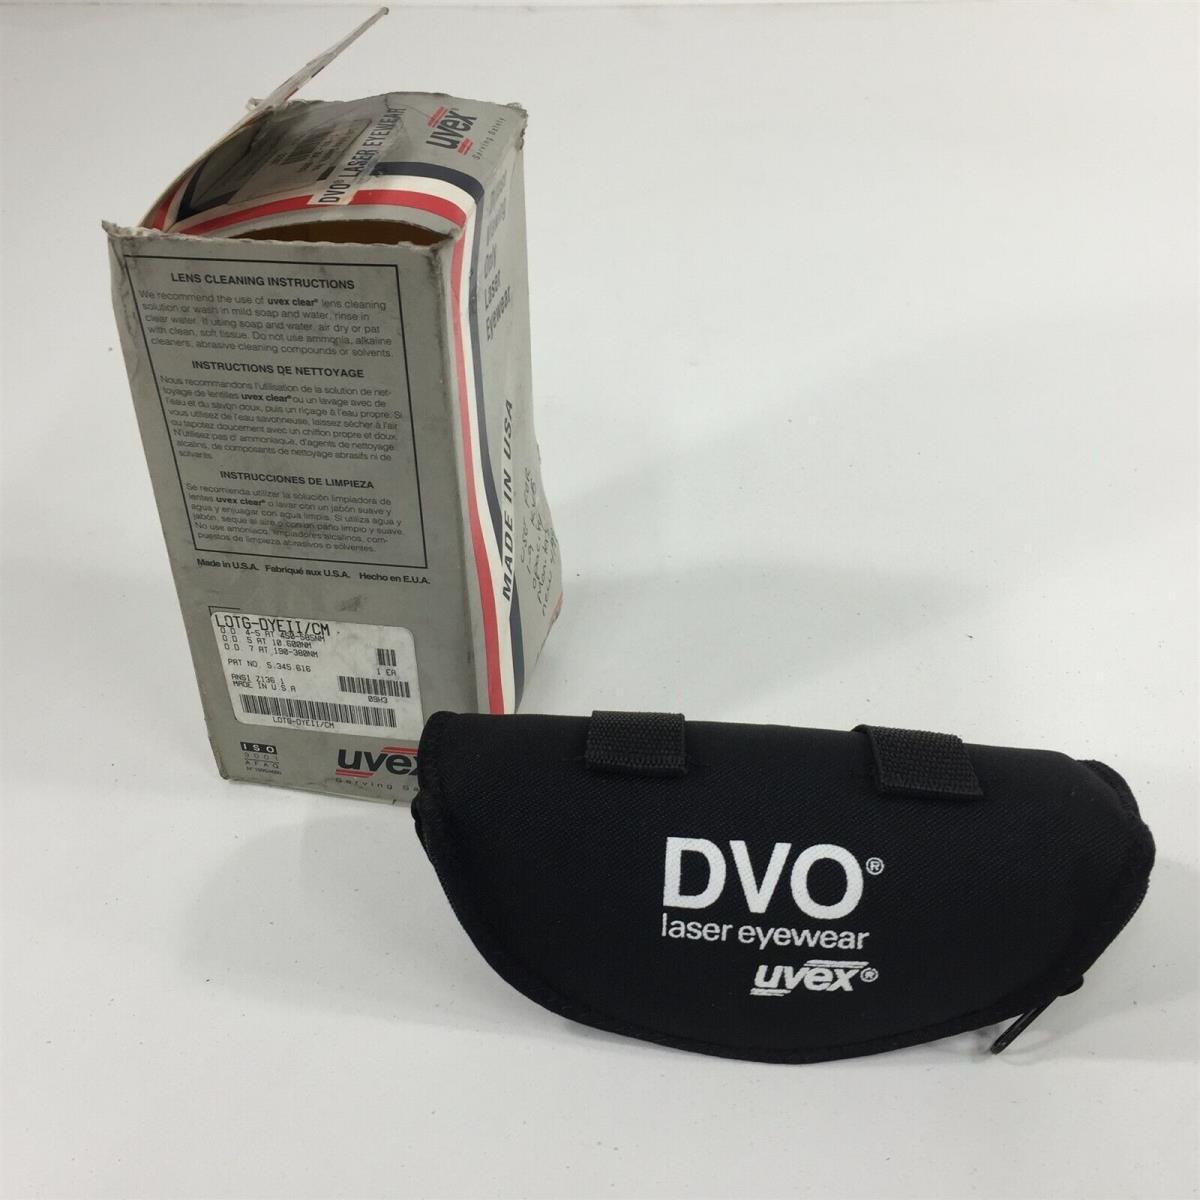 Uvex Lotg-dyeii/cm Laser Safety Glasses - Red Lenses + Case